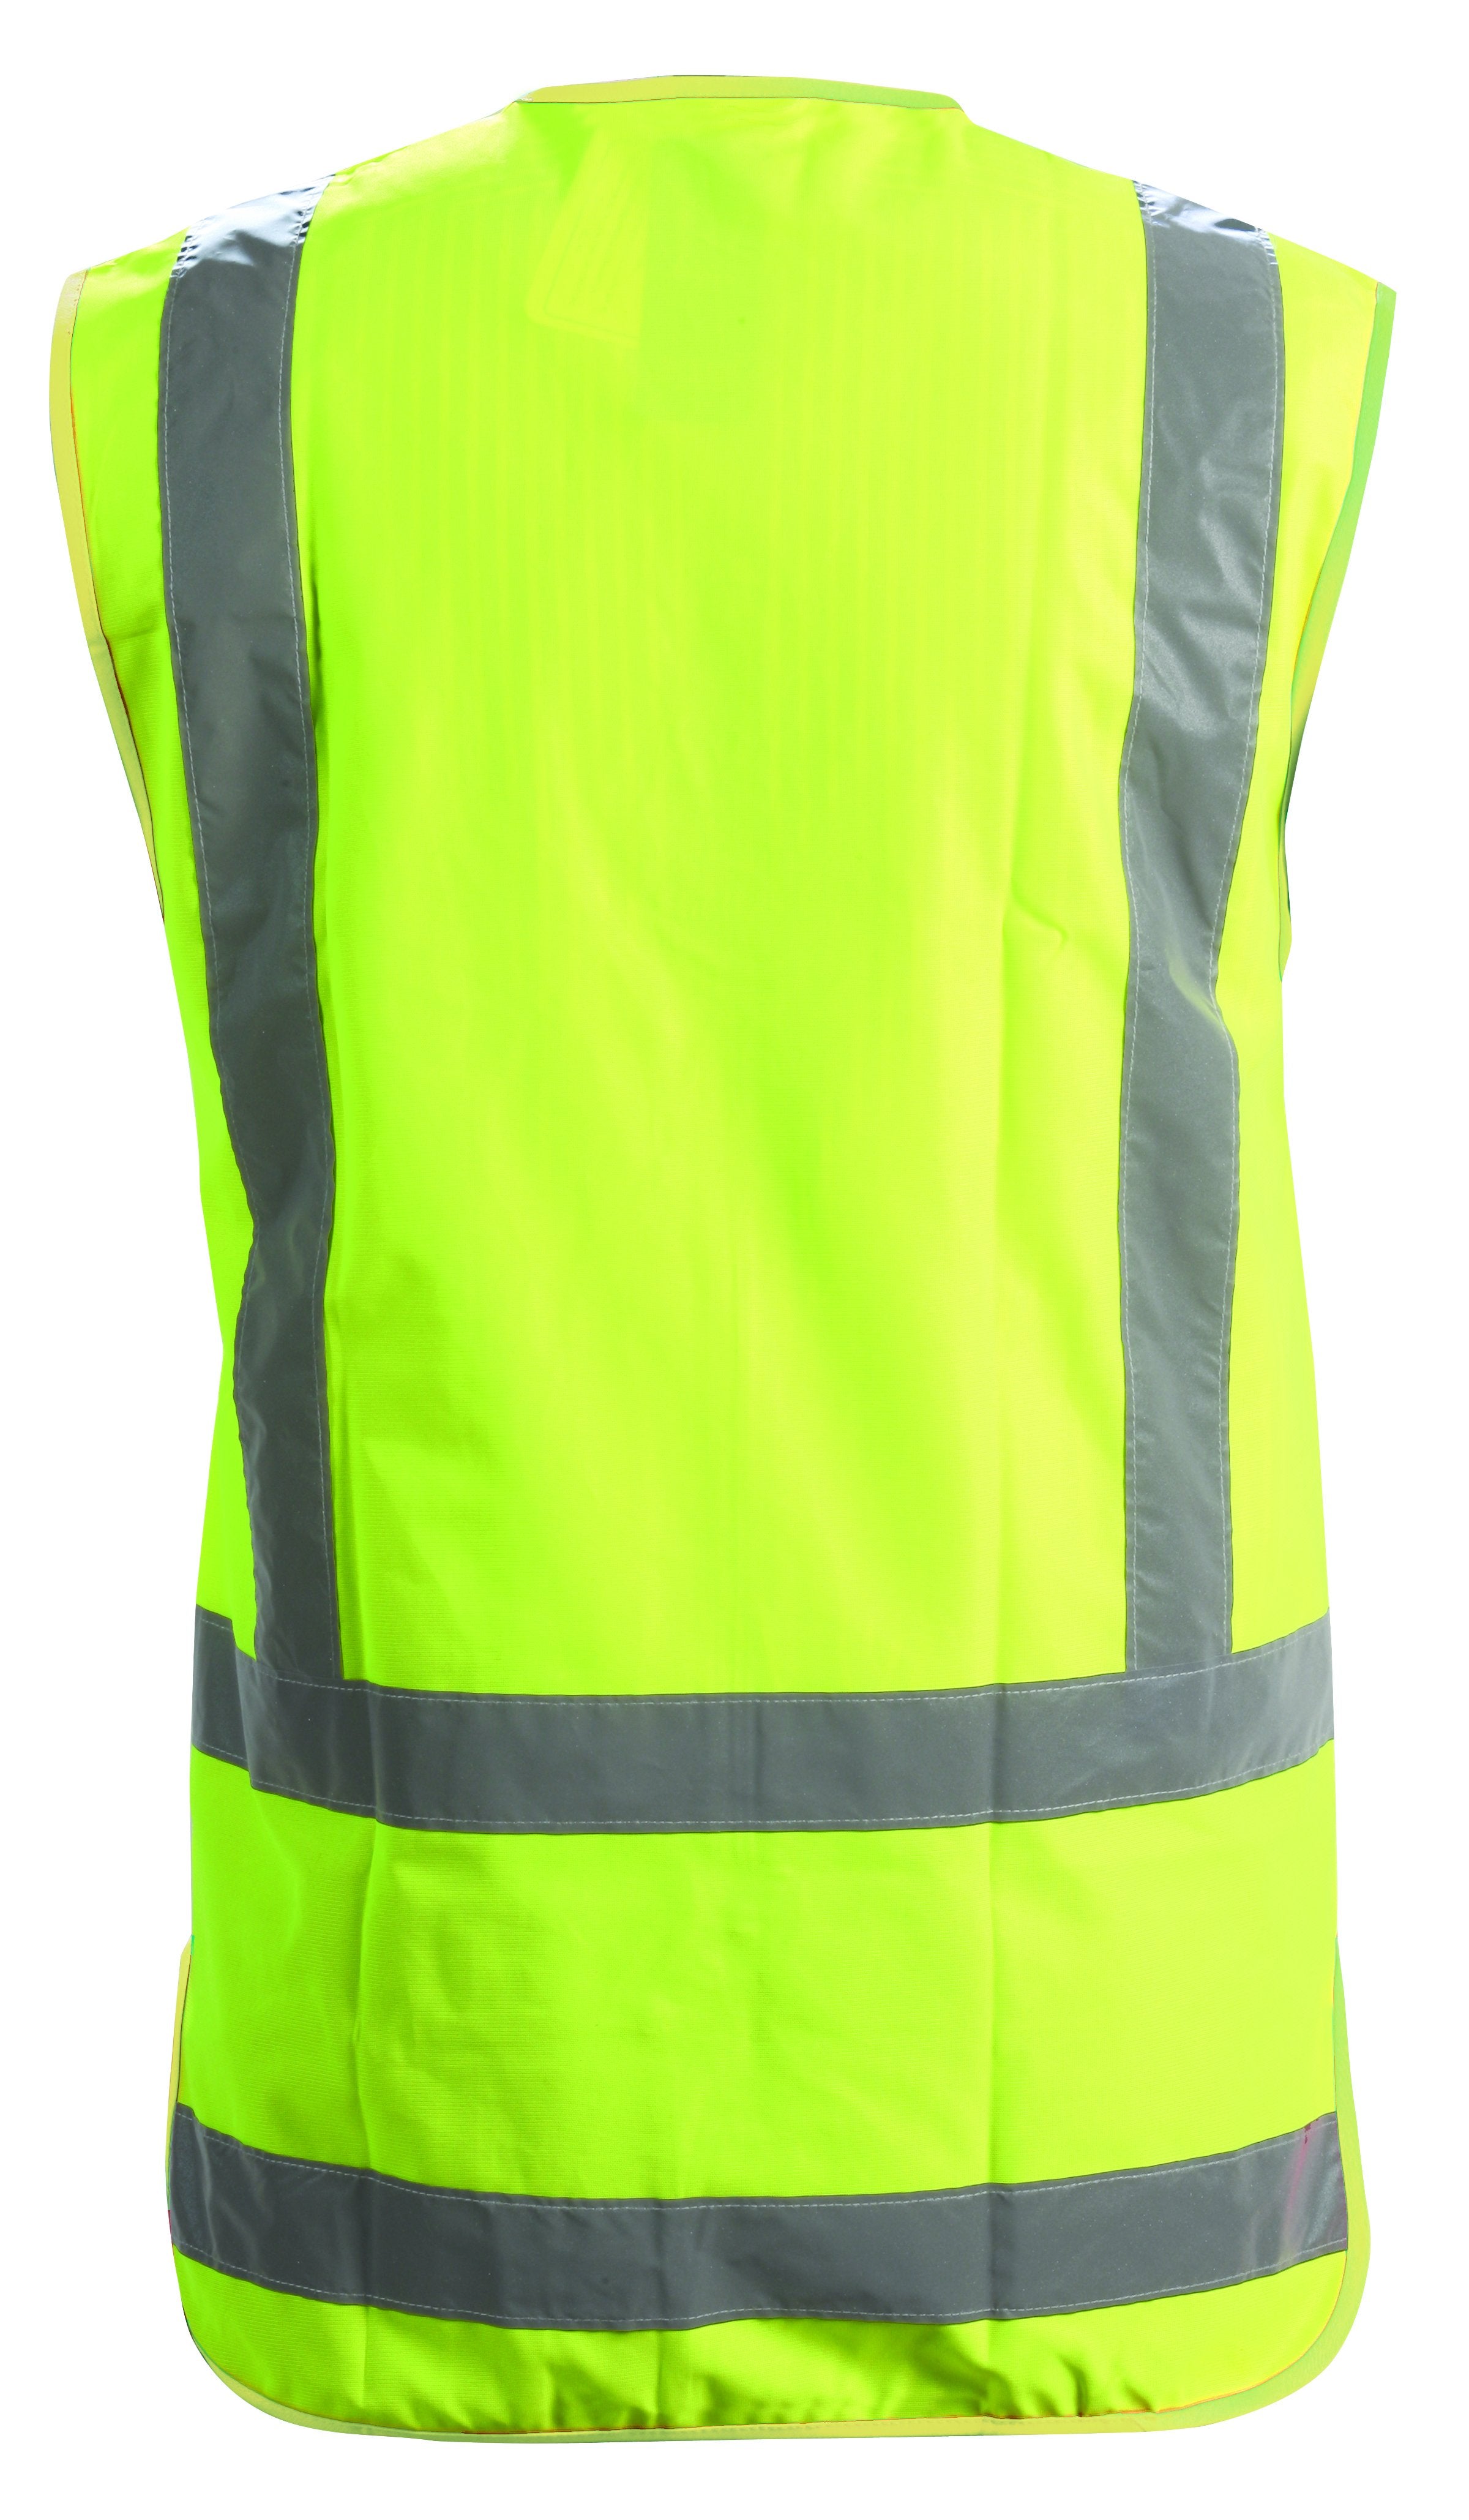 Day/Night Safety Vest